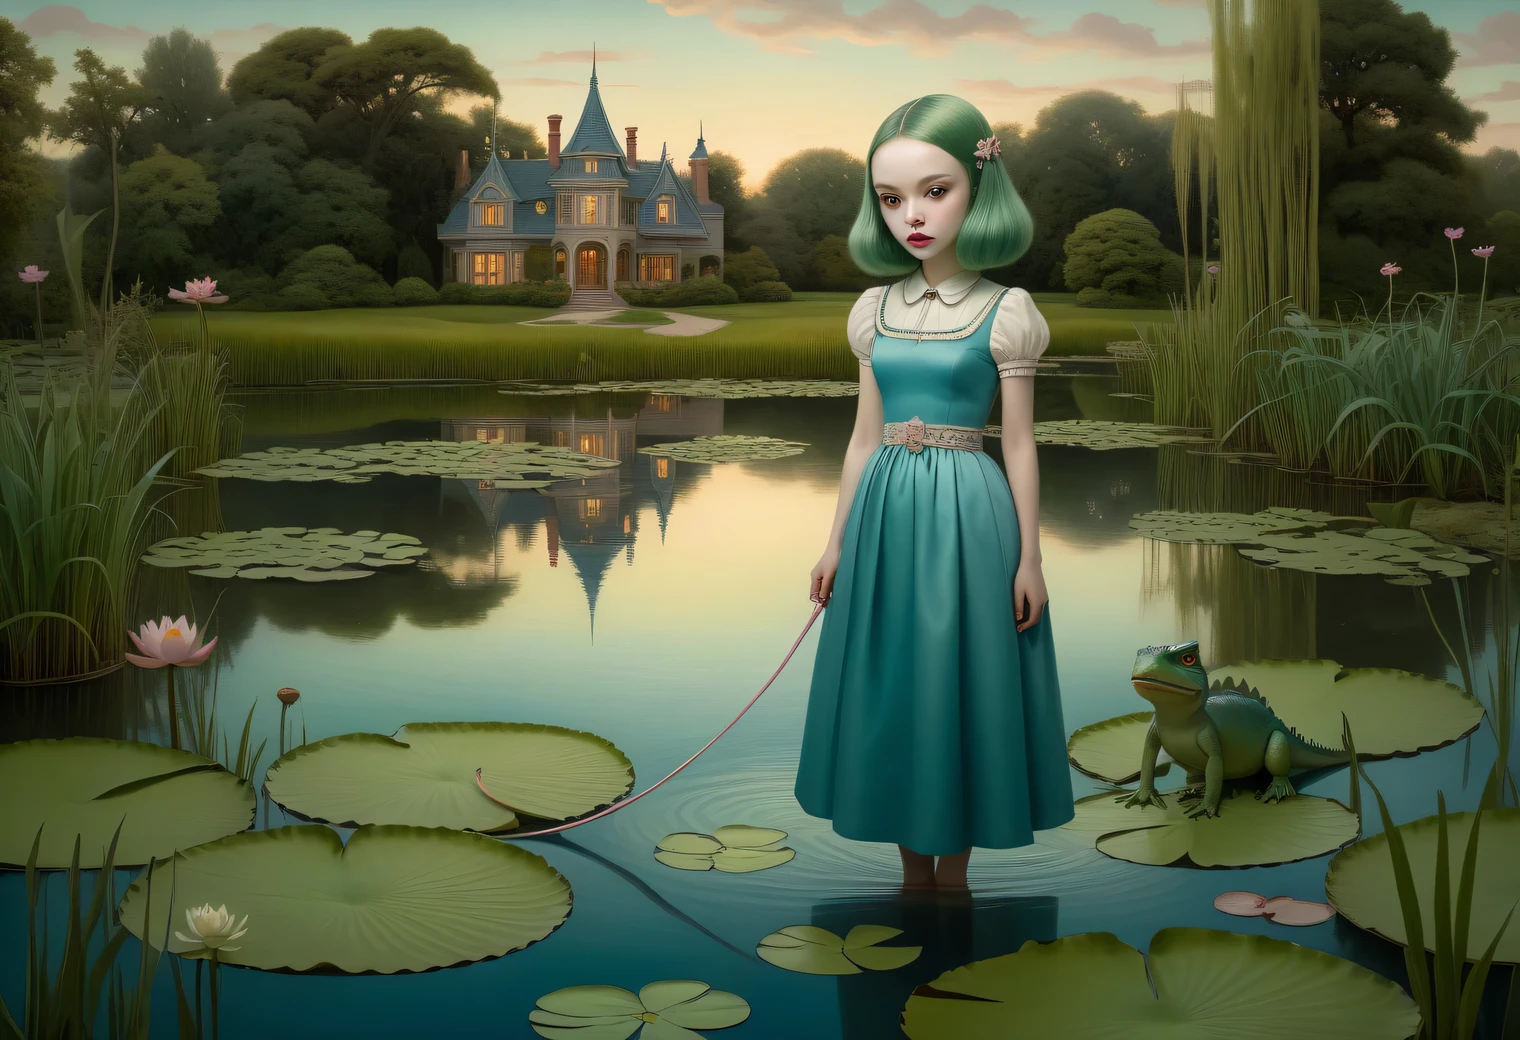 ภาพวาดบนกระดาษคราฟต์ตามสไตล์ของศิลปิน มาร์ค ไรเดน, a strange alien girl with long green hair in a blue dress walks a small dinosaur on a leash along the shore near the บ่อน้ำตอนเย็น, พื้นผิวสระน้ำยามเย็น, ดอกบัวและต้นกก, กบบนดอกบัว, มีสาวแปลกหน้ามาแสดงอย่างละเอียด, บ่อน้ำตอนเย็น, สอดคล้องกับสไตล์ของ Mark Ryden อย่างเต็มที่, ความคมชัดสูง, เพจสไตล์มาร์ค ไรเดน